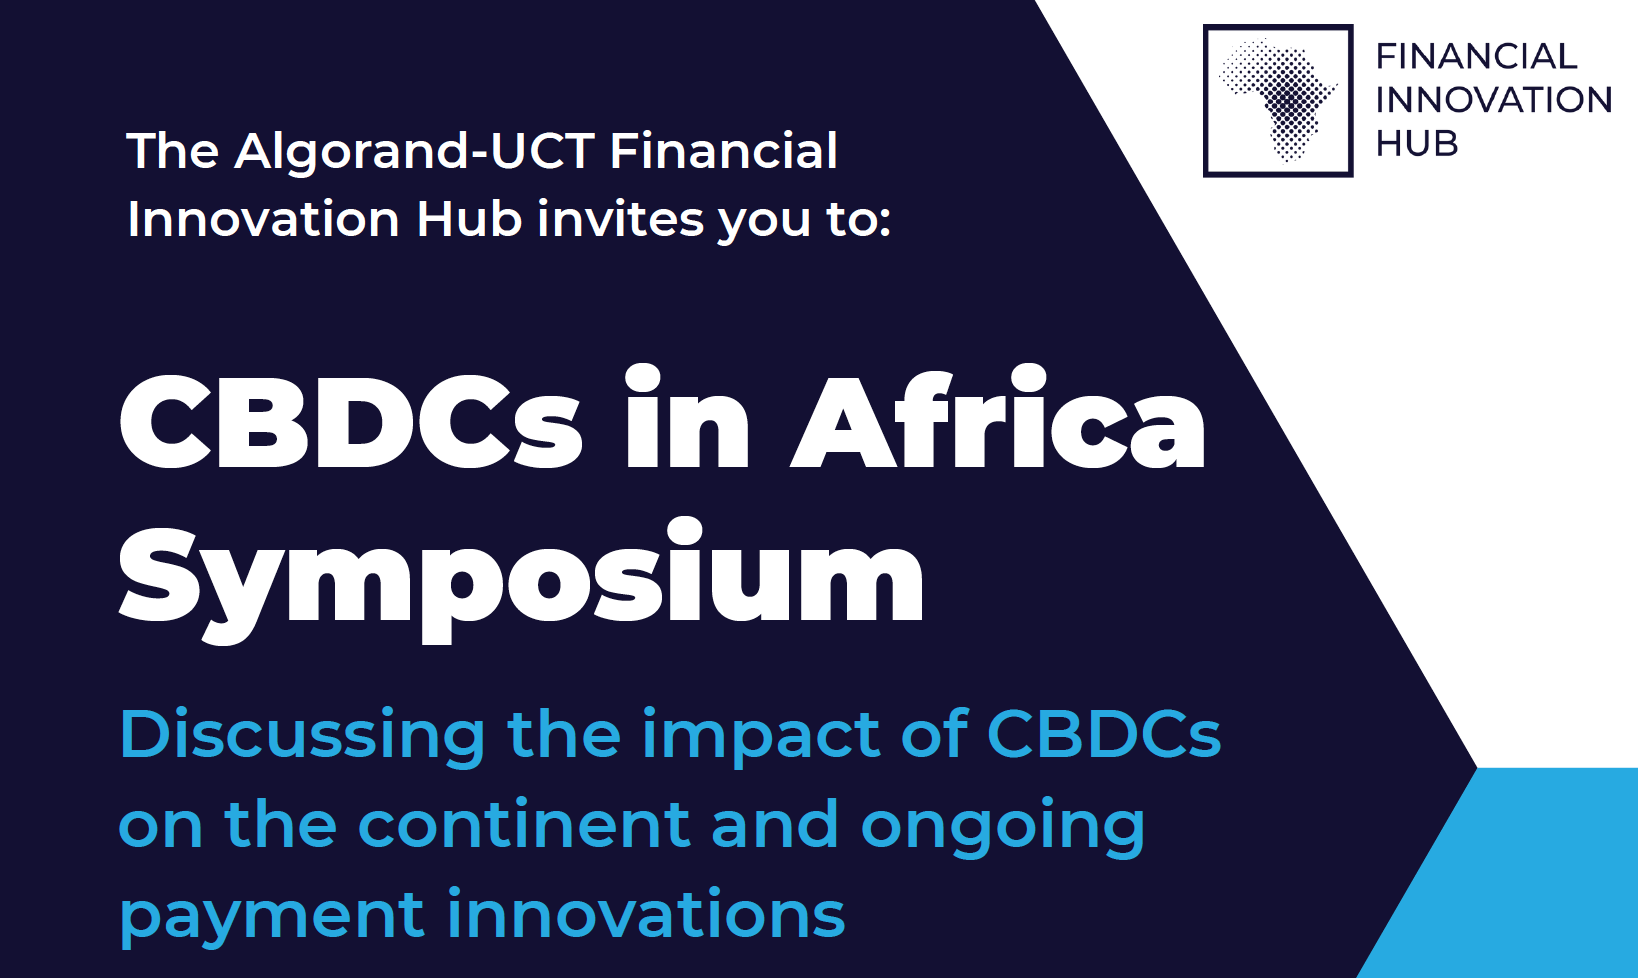 CBDC in Africa Symposium Invite 2022